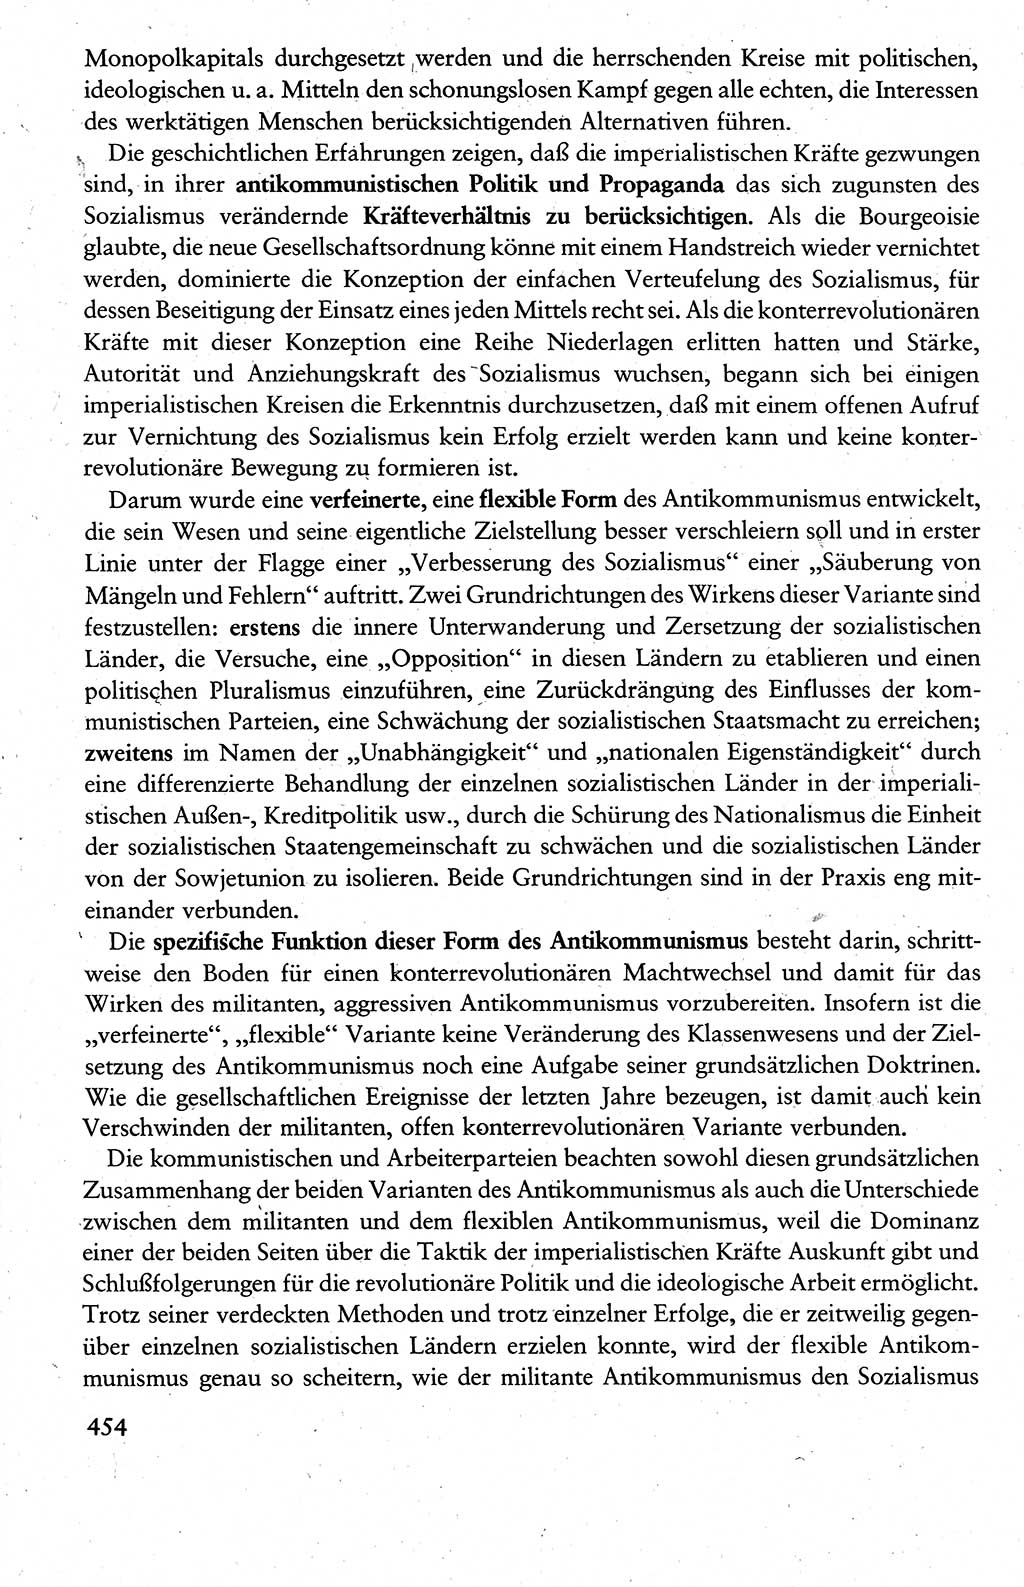 Wissenschaftlicher Kommunismus [Deutsche Demokratische Republik (DDR)], Lehrbuch für das marxistisch-leninistische Grundlagenstudium 1983, Seite 454 (Wiss. Komm. DDR Lb. 1983, S. 454)